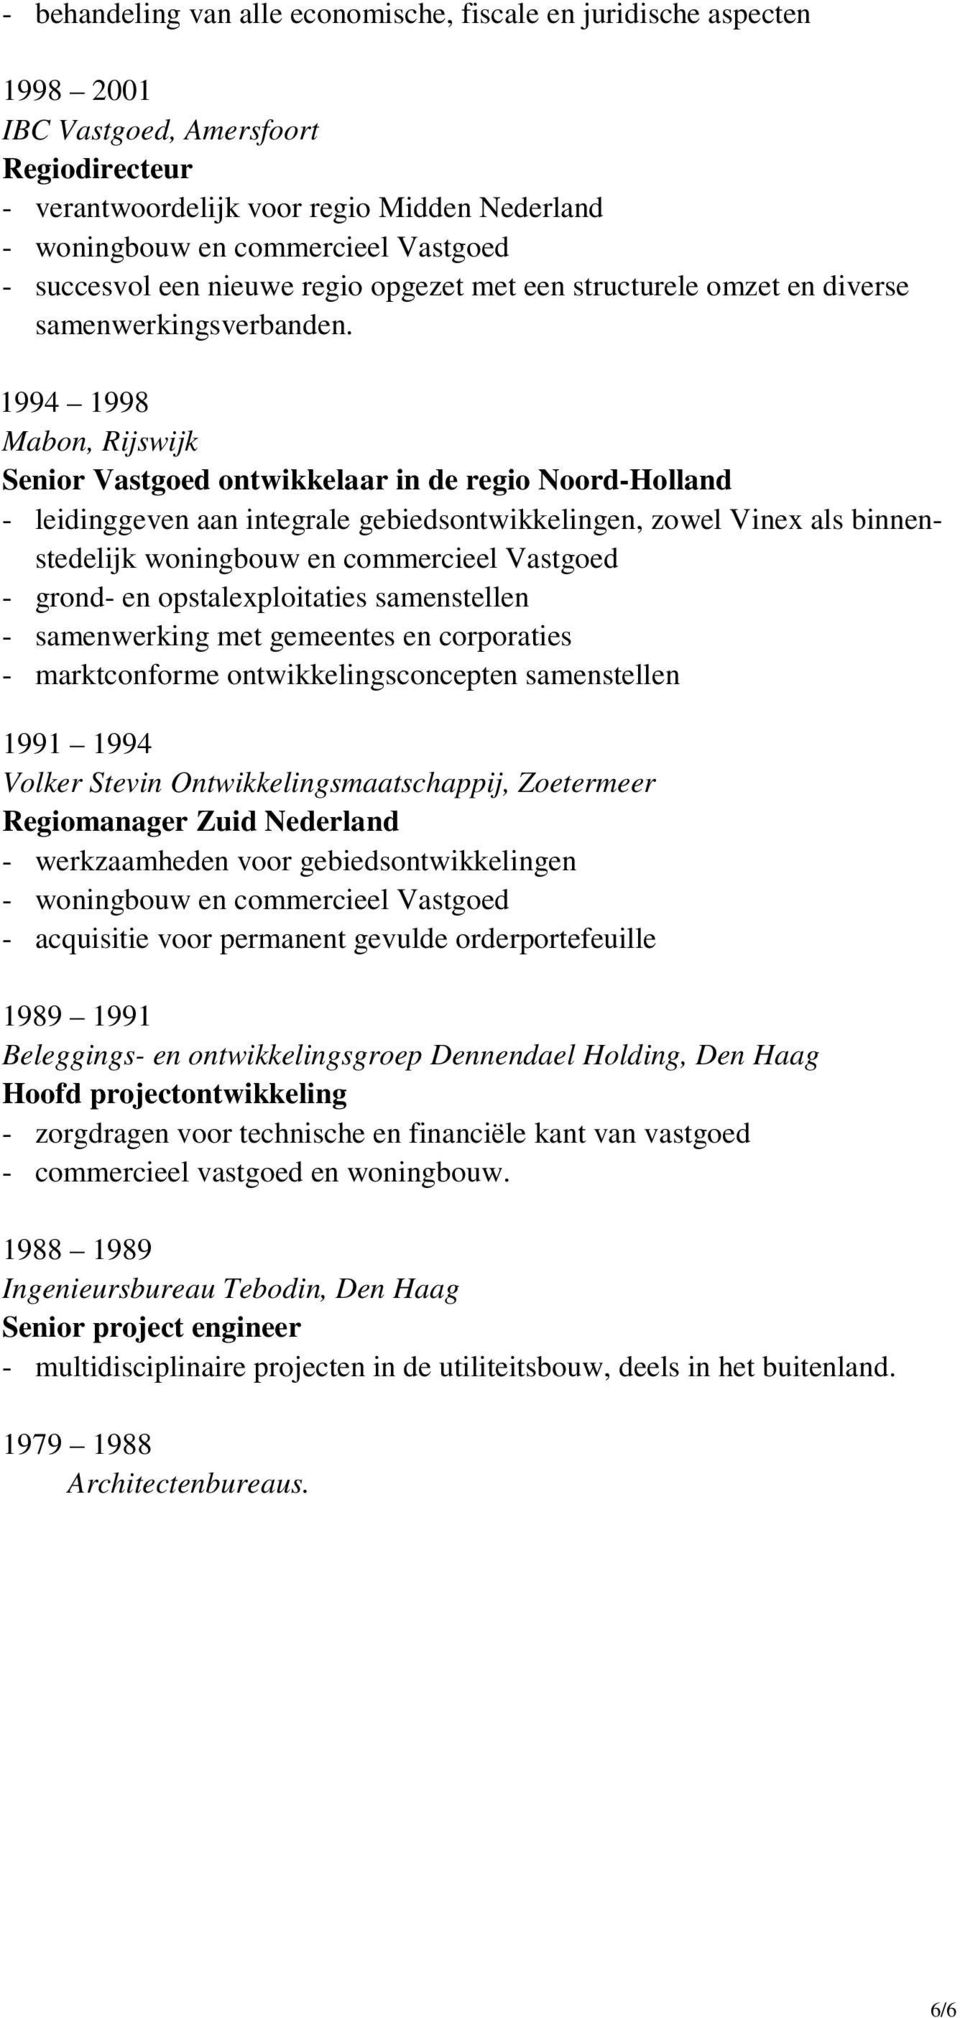 1994 1998 Mabon, Rijswijk Senior Vastgoed ontwikkelaar in de regio Noord-Holland - leidinggeven aan integrale gebiedsontwikkelingen, zowel Vinex als binnenstedelijk woningbouw en commercieel Vastgoed